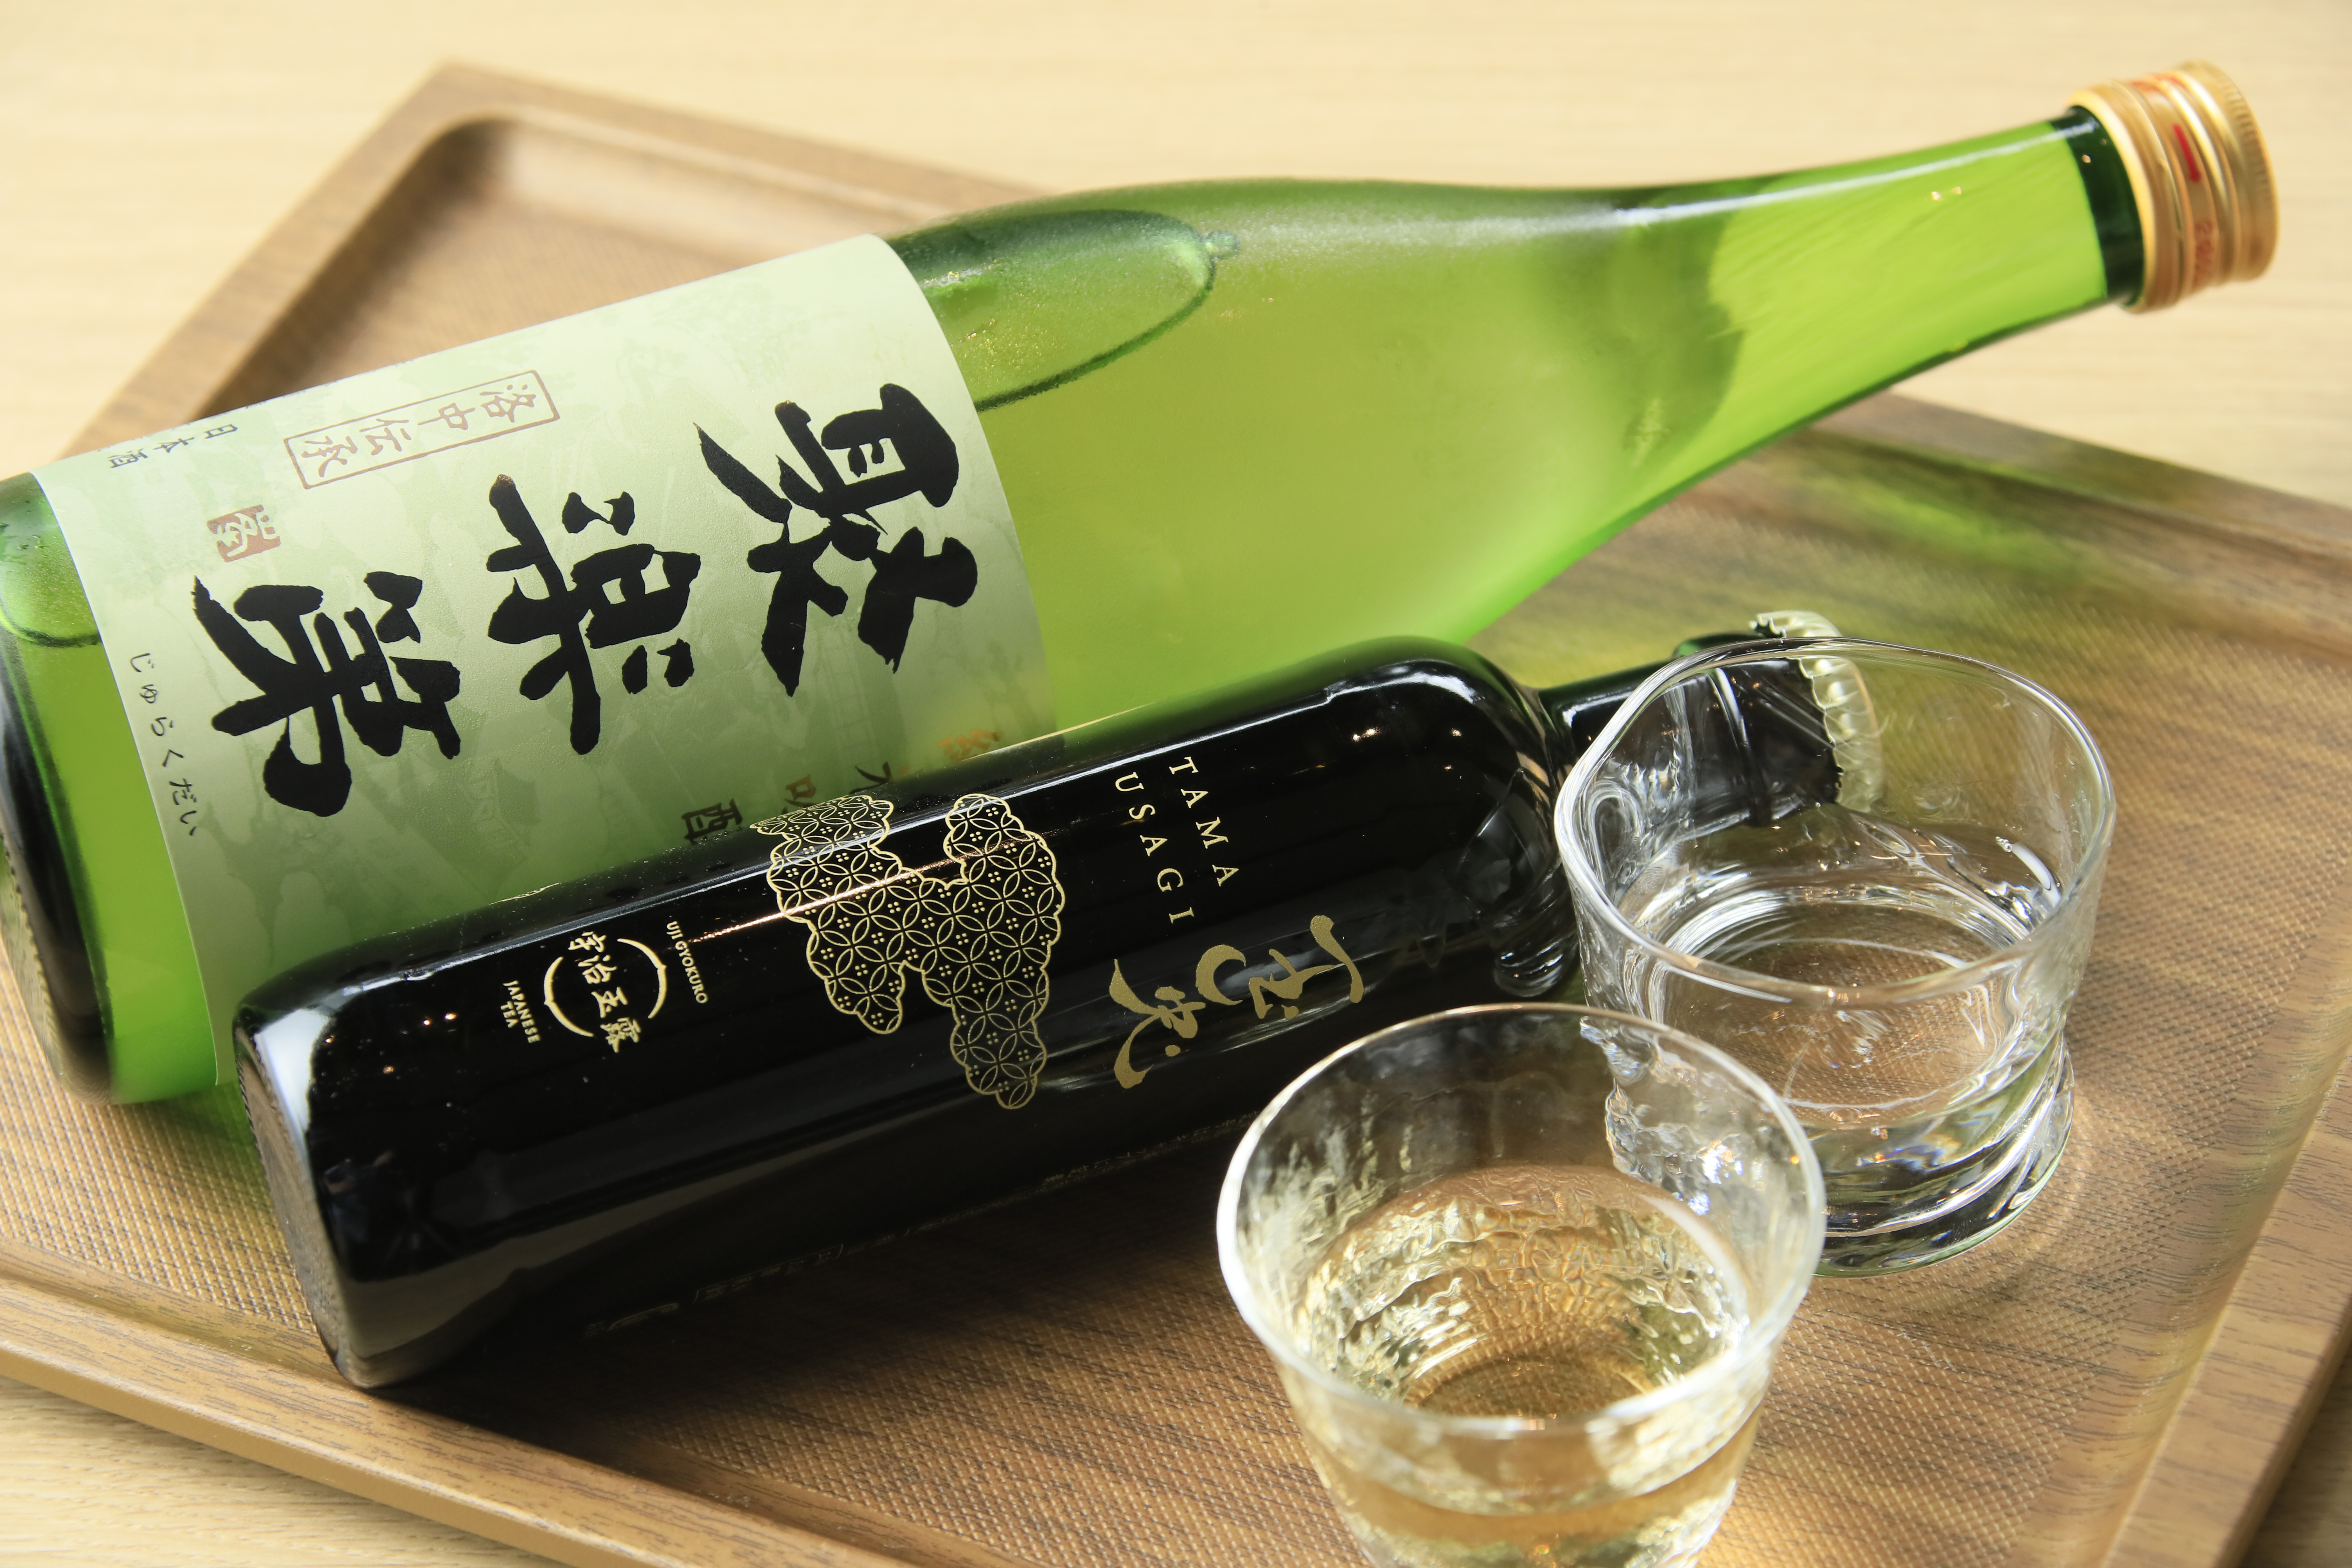 ウェルカムドリンクとして京都宇治玉露の玉兎と佐々木酒造の聚楽第をご用意しております